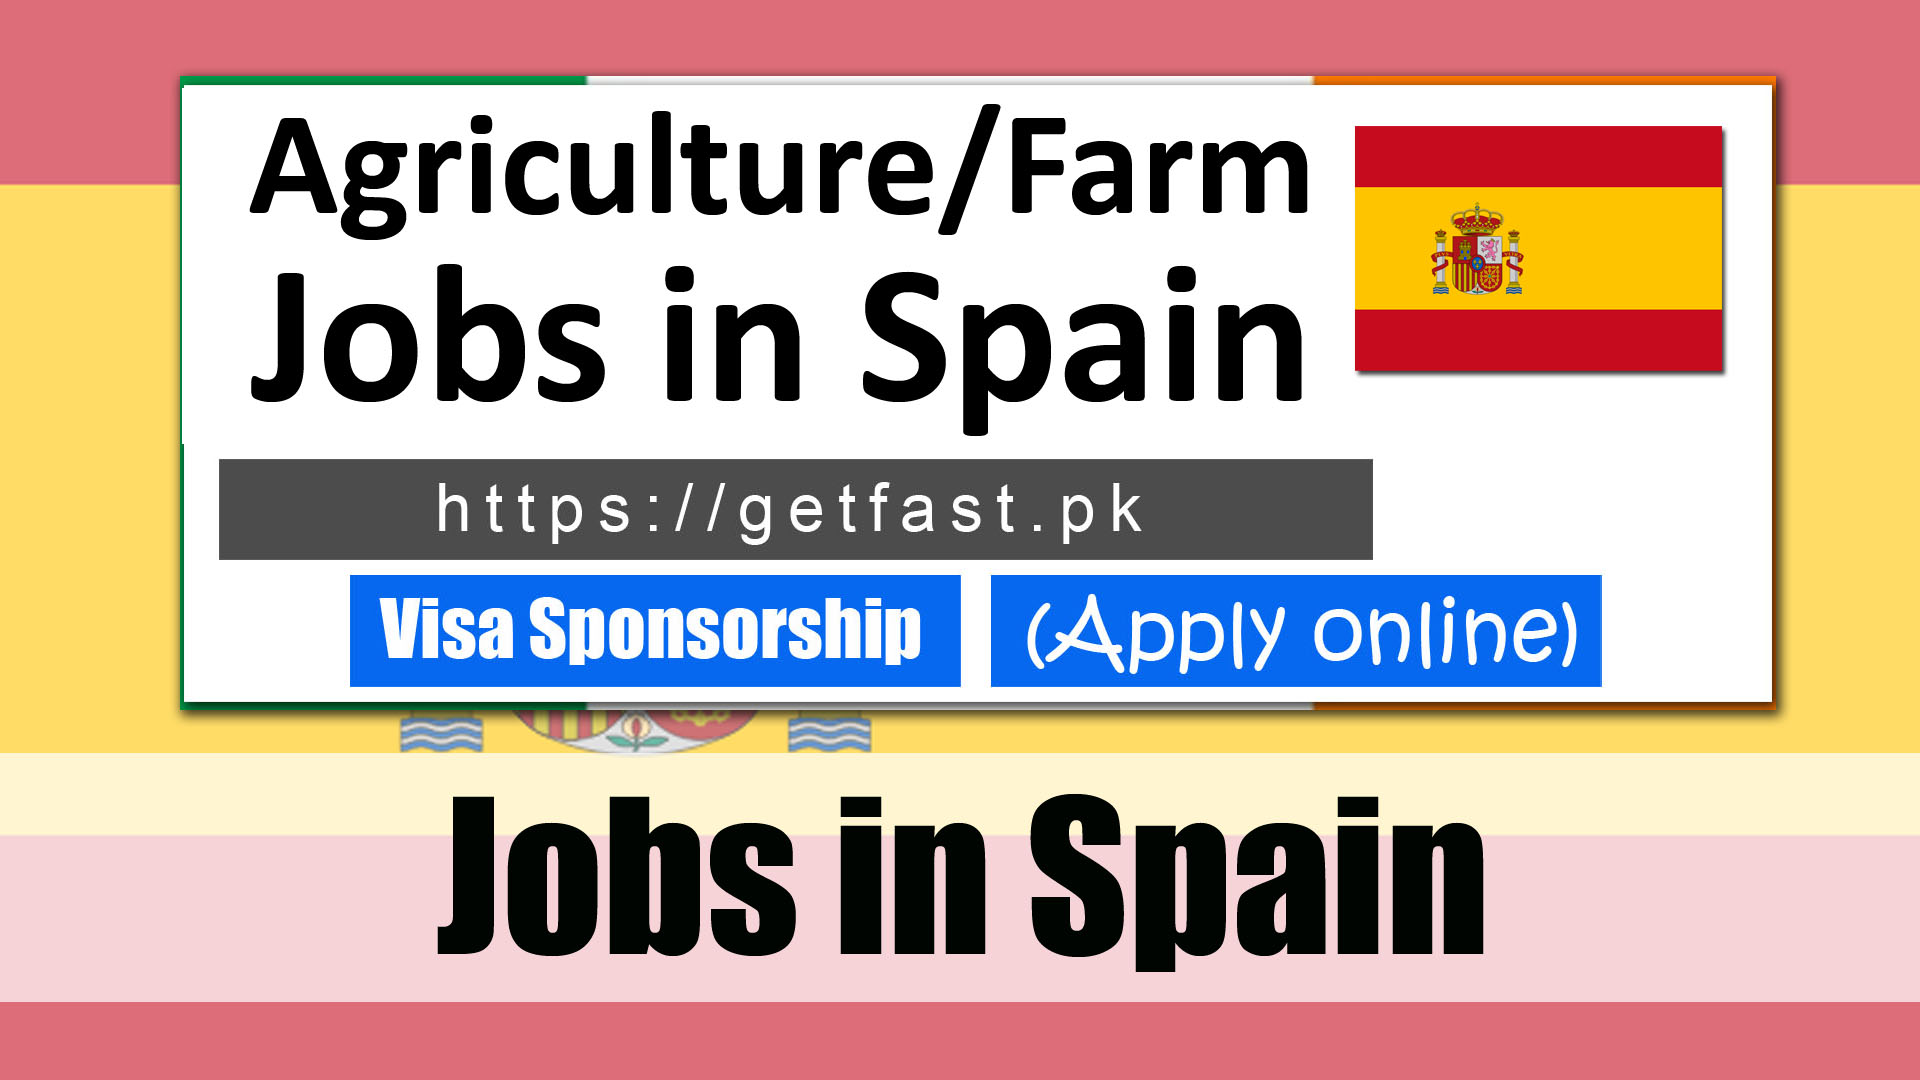 Jobs in Spain